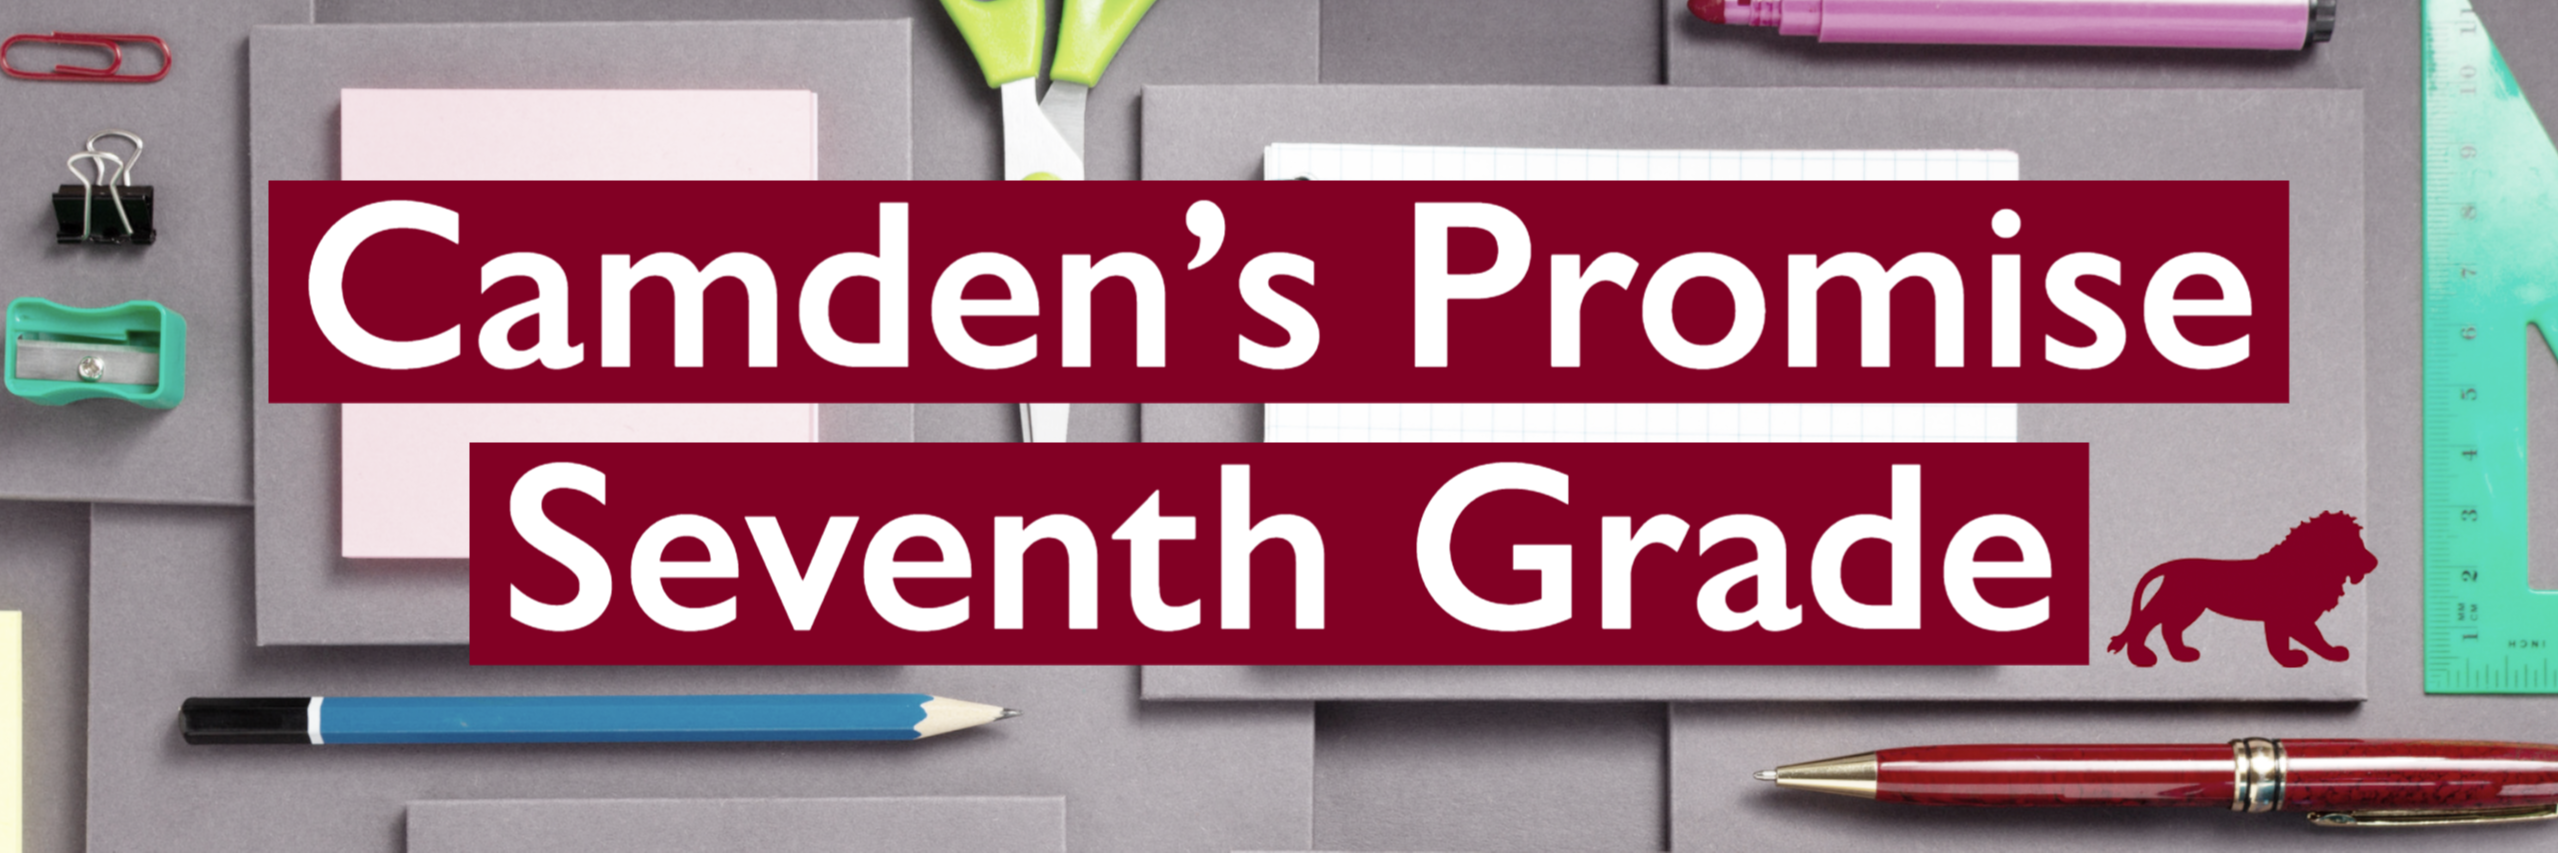 Camden's Promise Seventh Grade